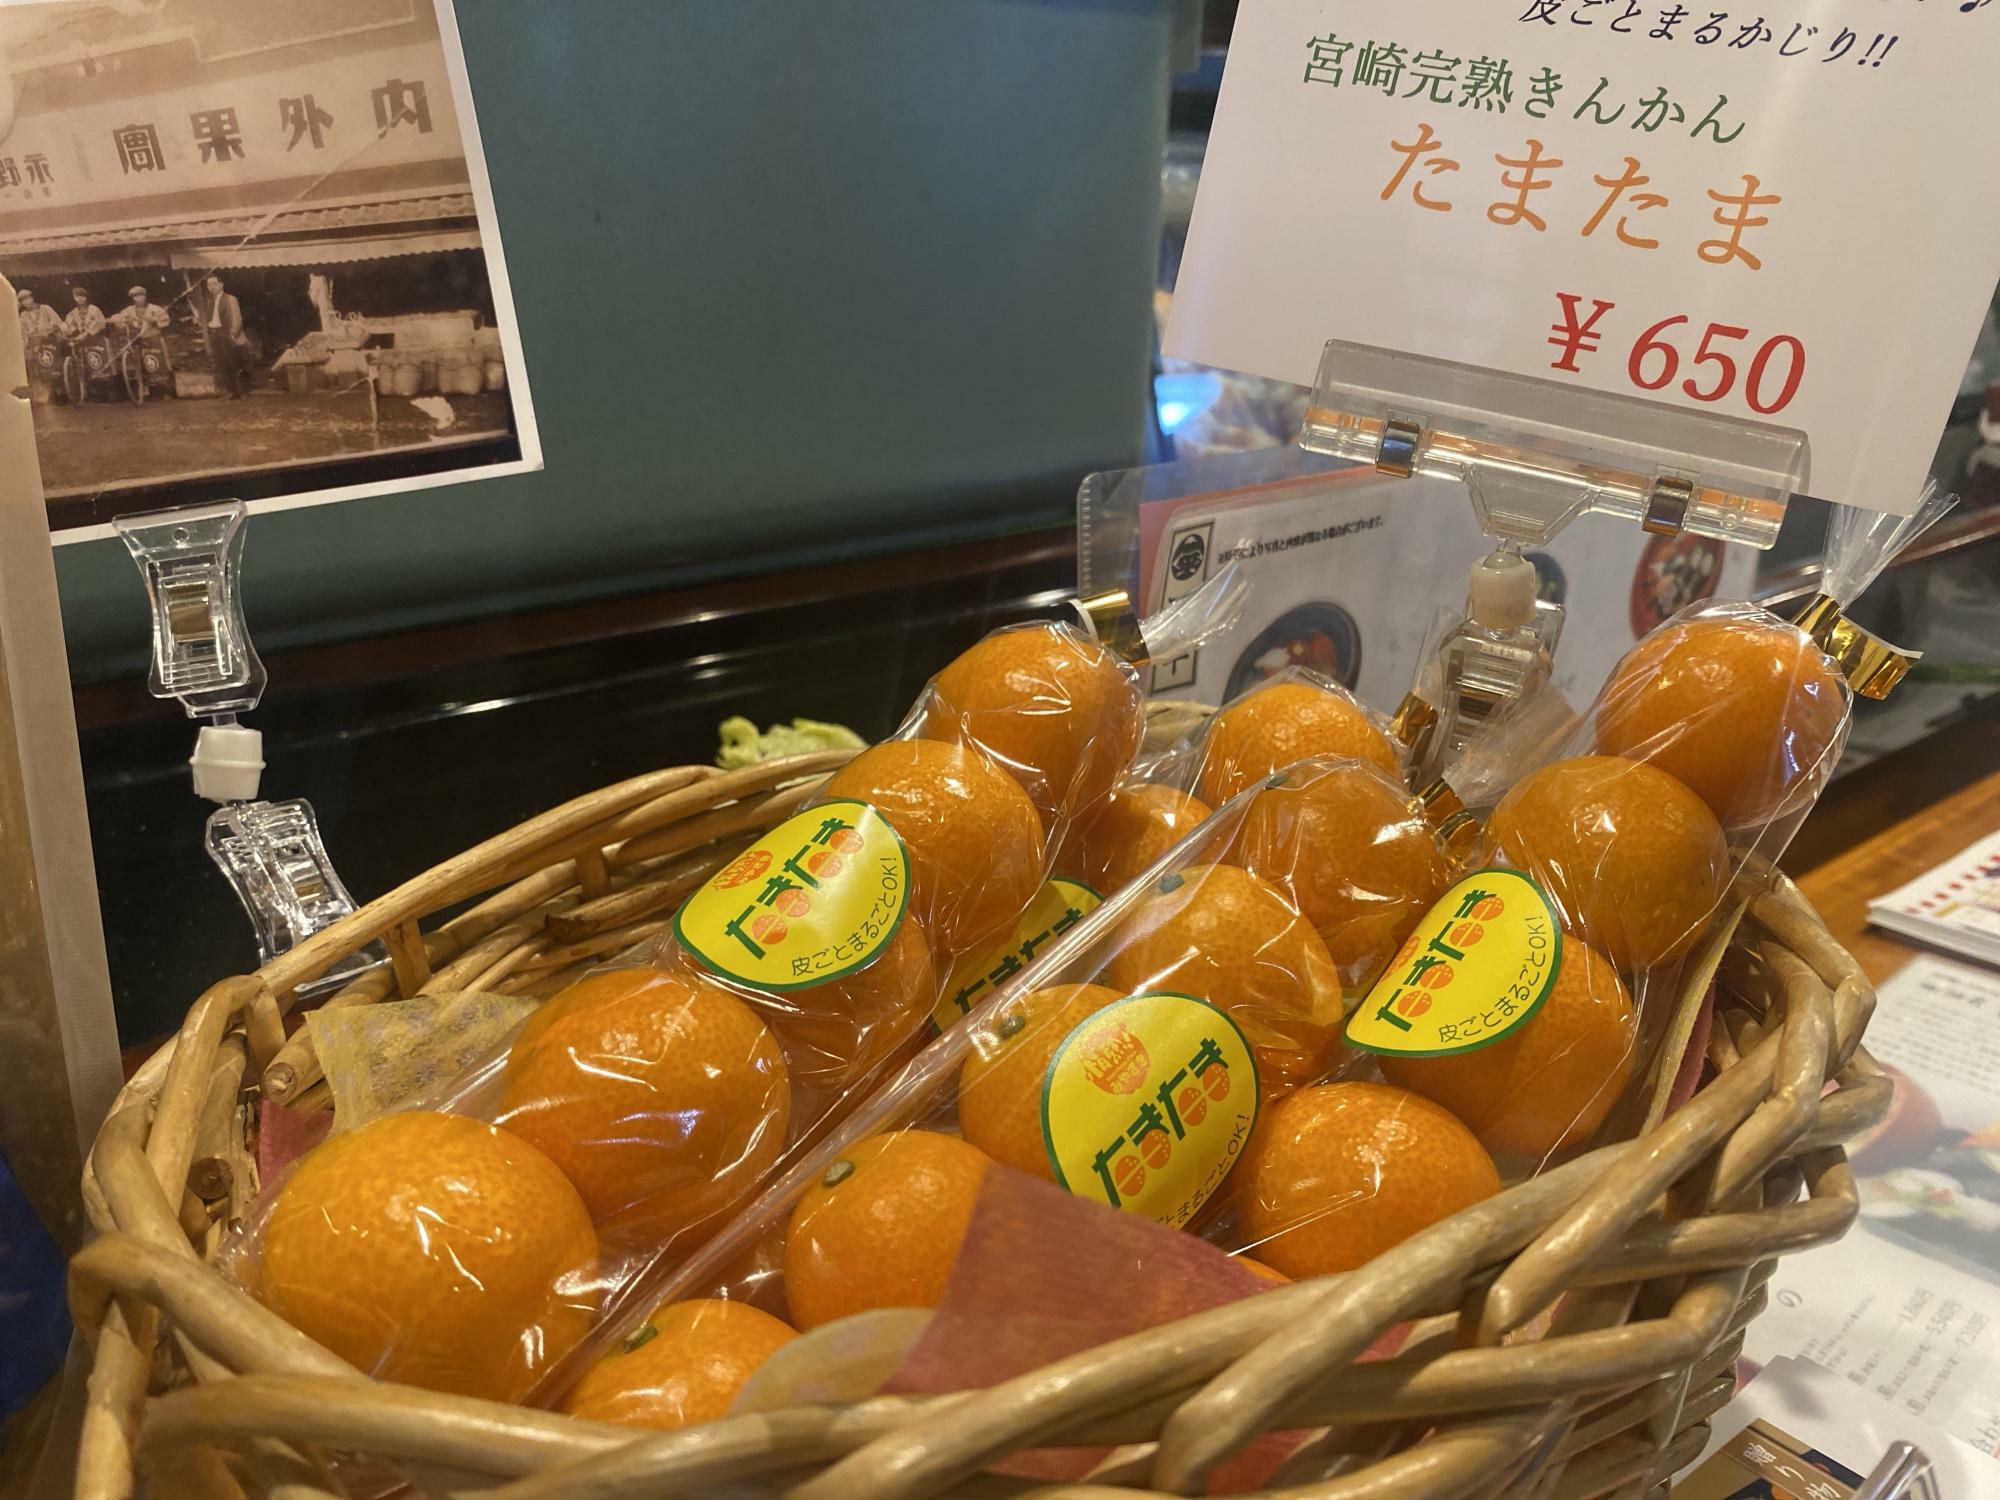 「宮崎 完熟きんかん たまたま」は皮ごと食べられて栄養も満点の柑橘類です。